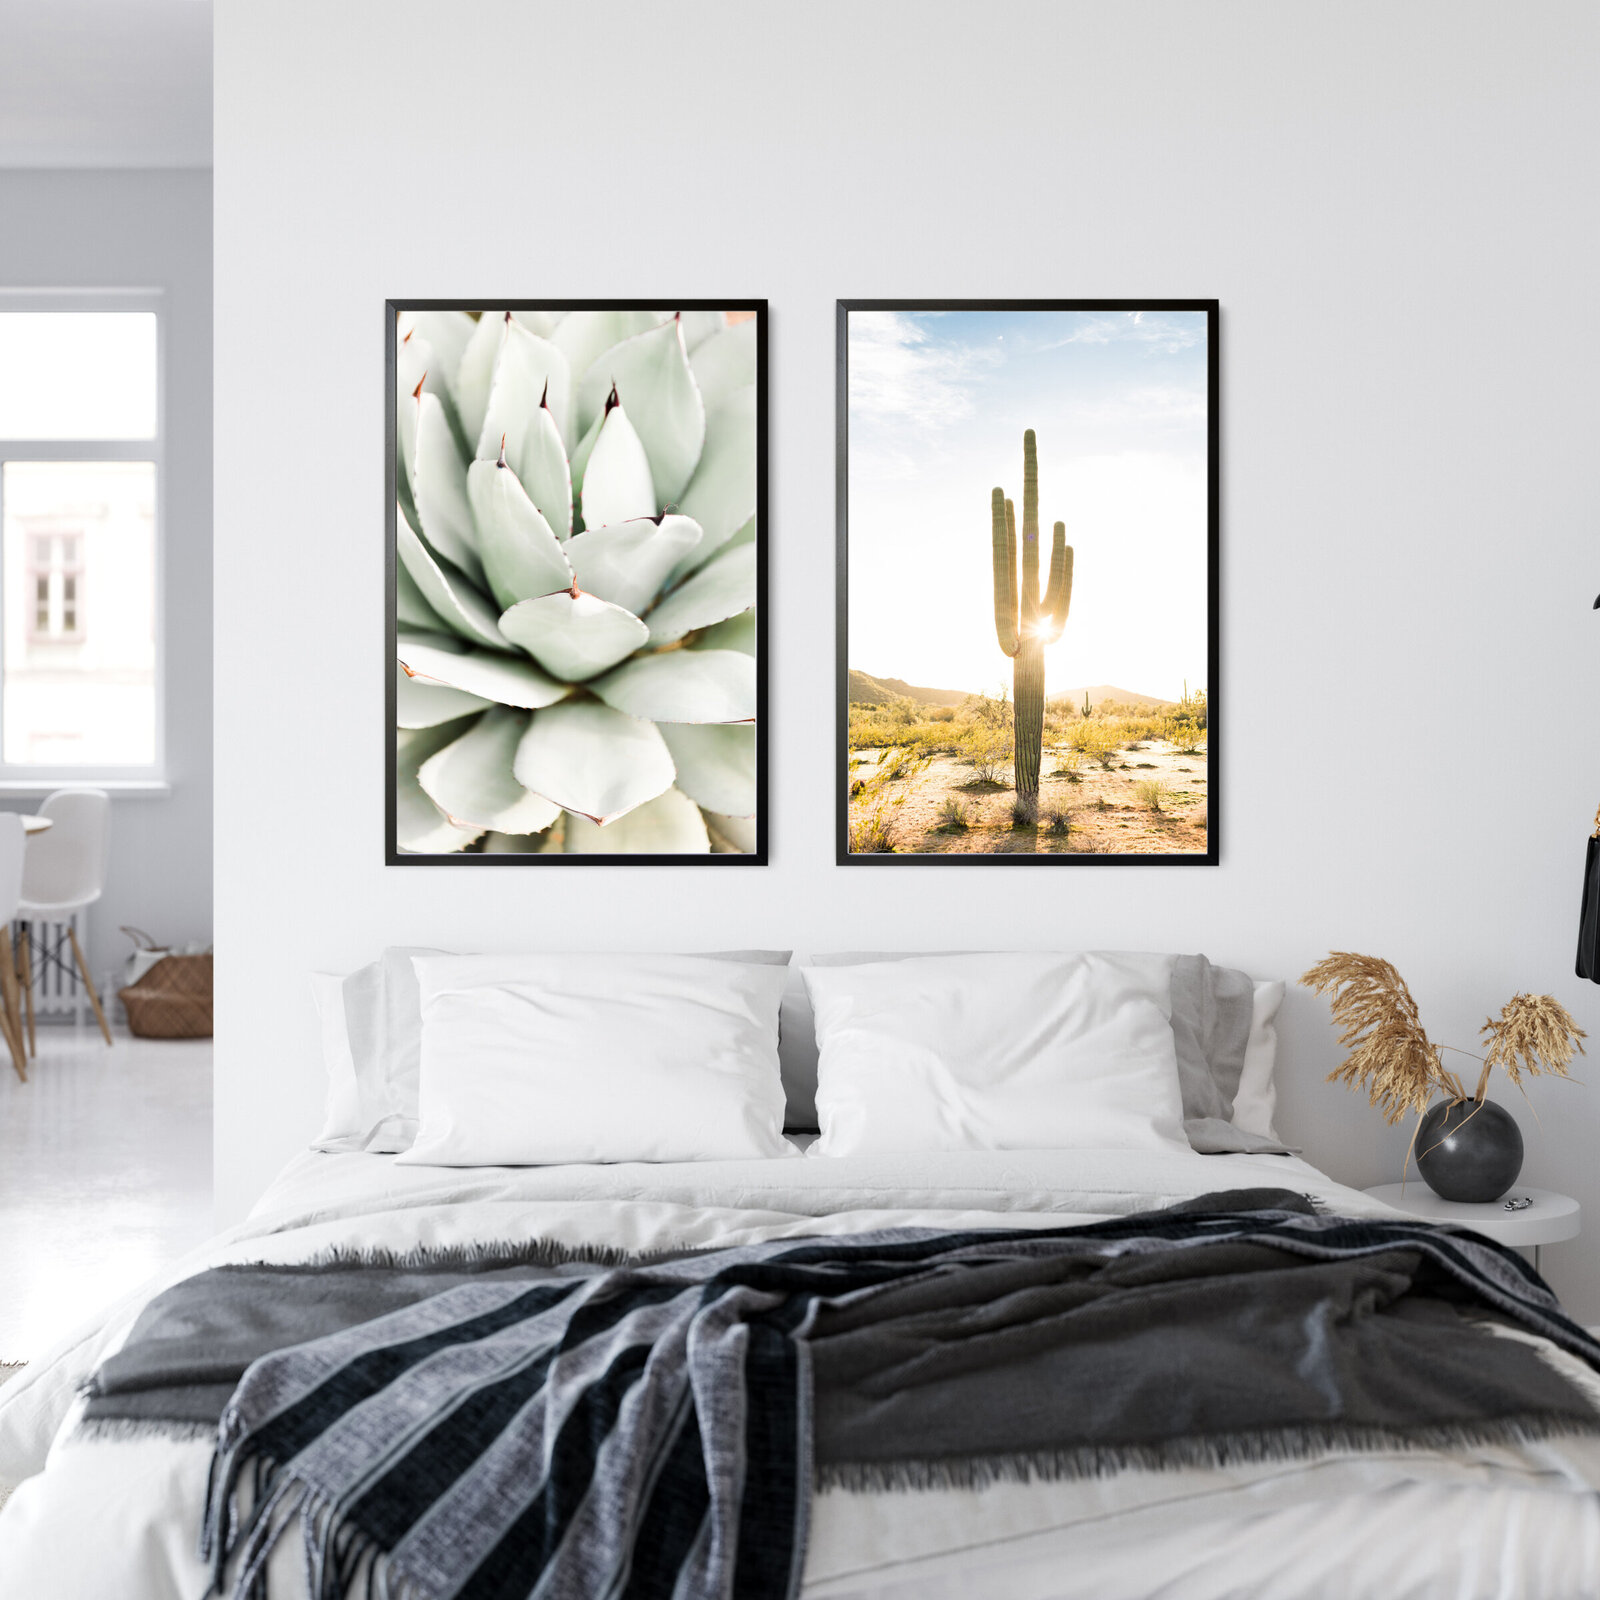 Arizona desert cactus prints in bedroom